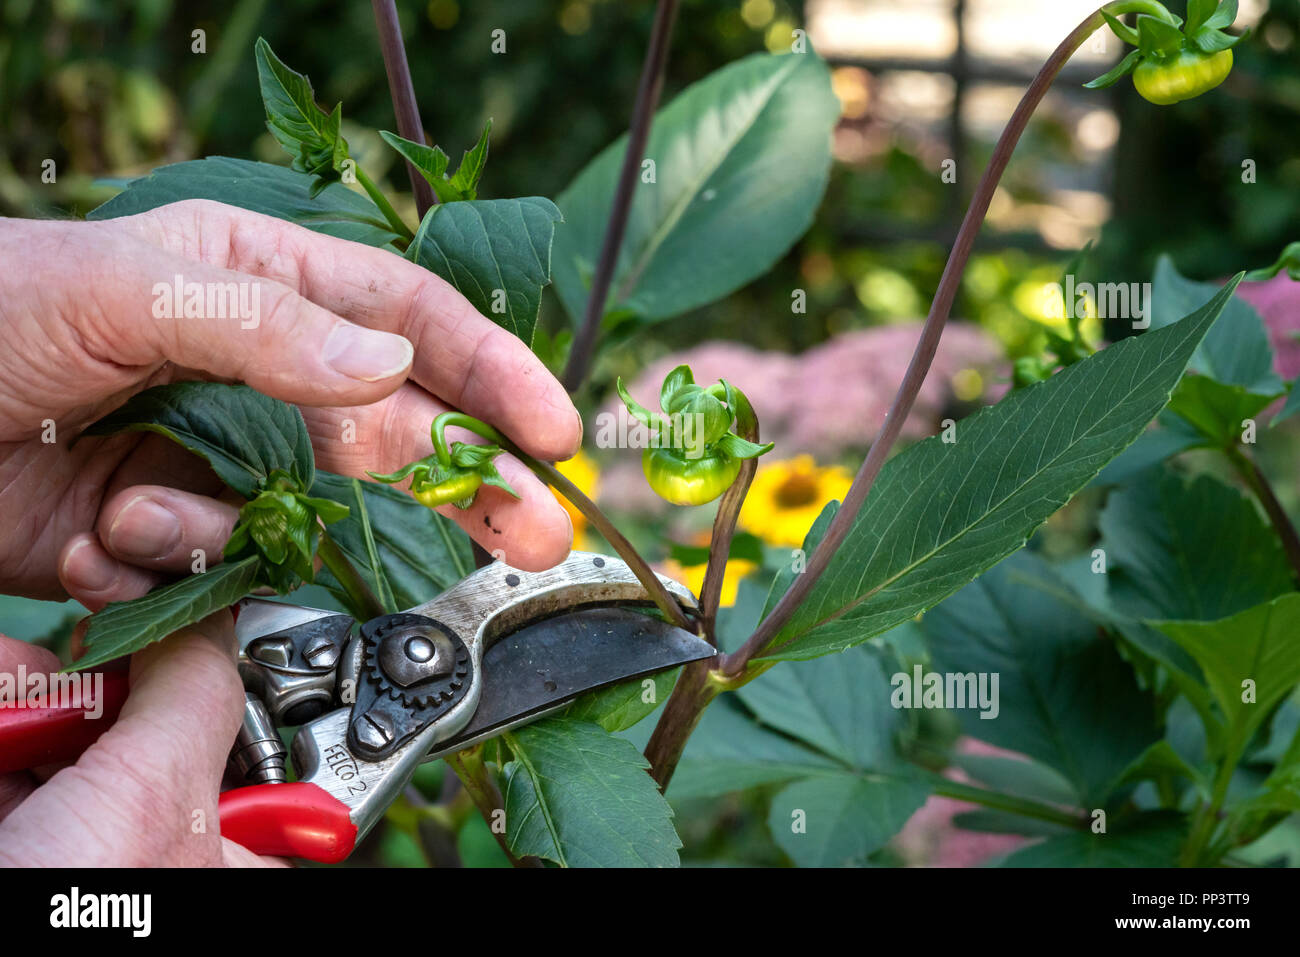 Une plante à l'aide d'ébourgeonnage dahlia sécateurs pour éliminer les petits boutons de fleurs. Banque D'Images